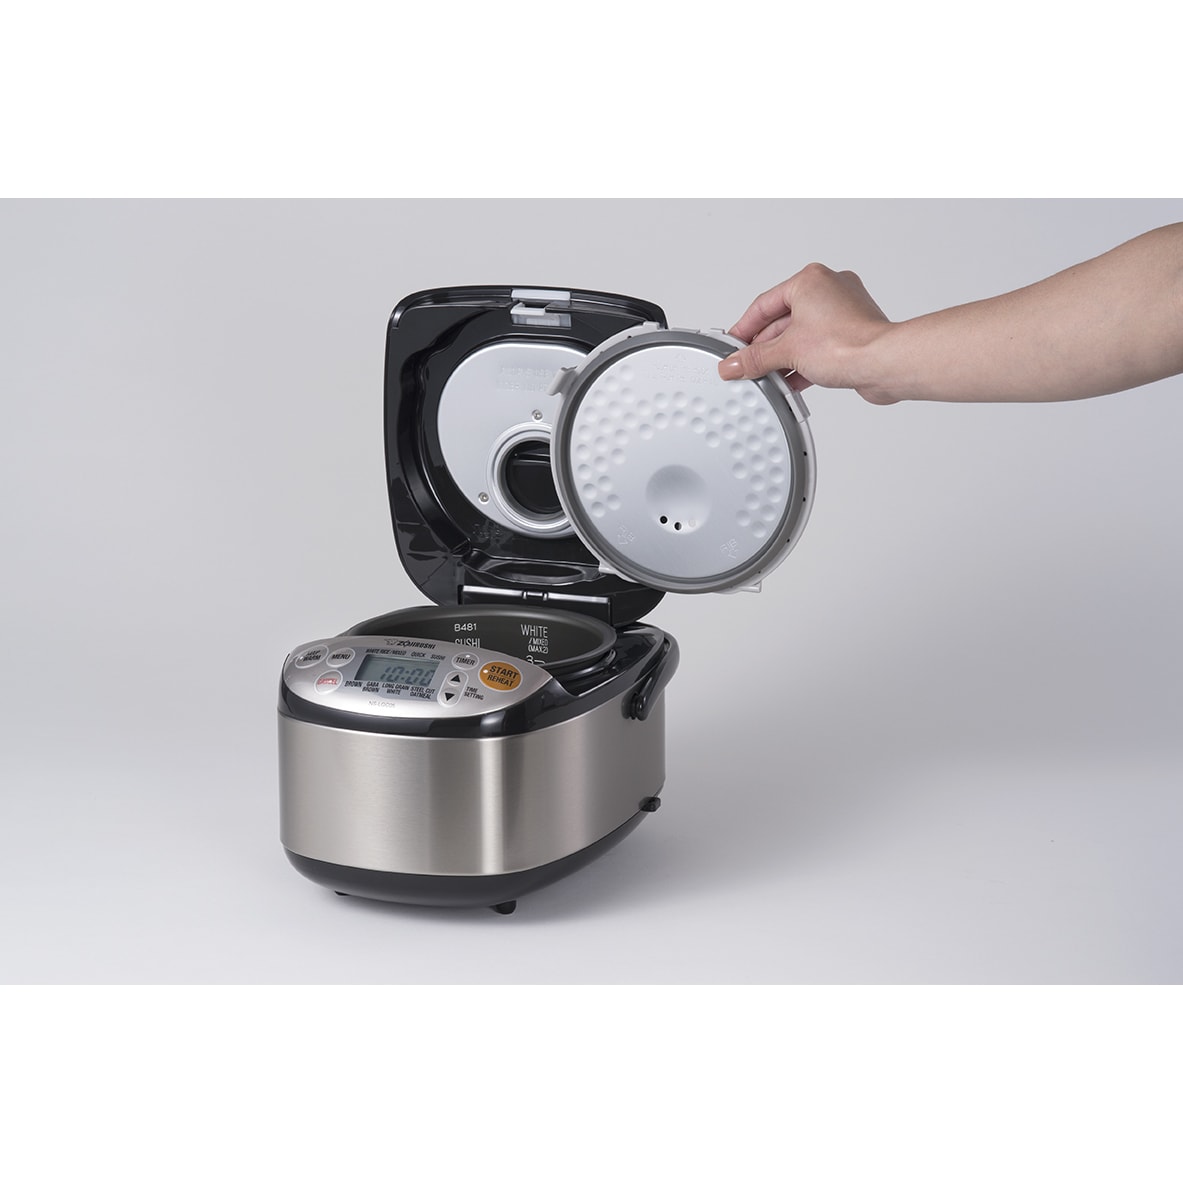 Zojirushi Micom rice cooker & Warmer 3 cup